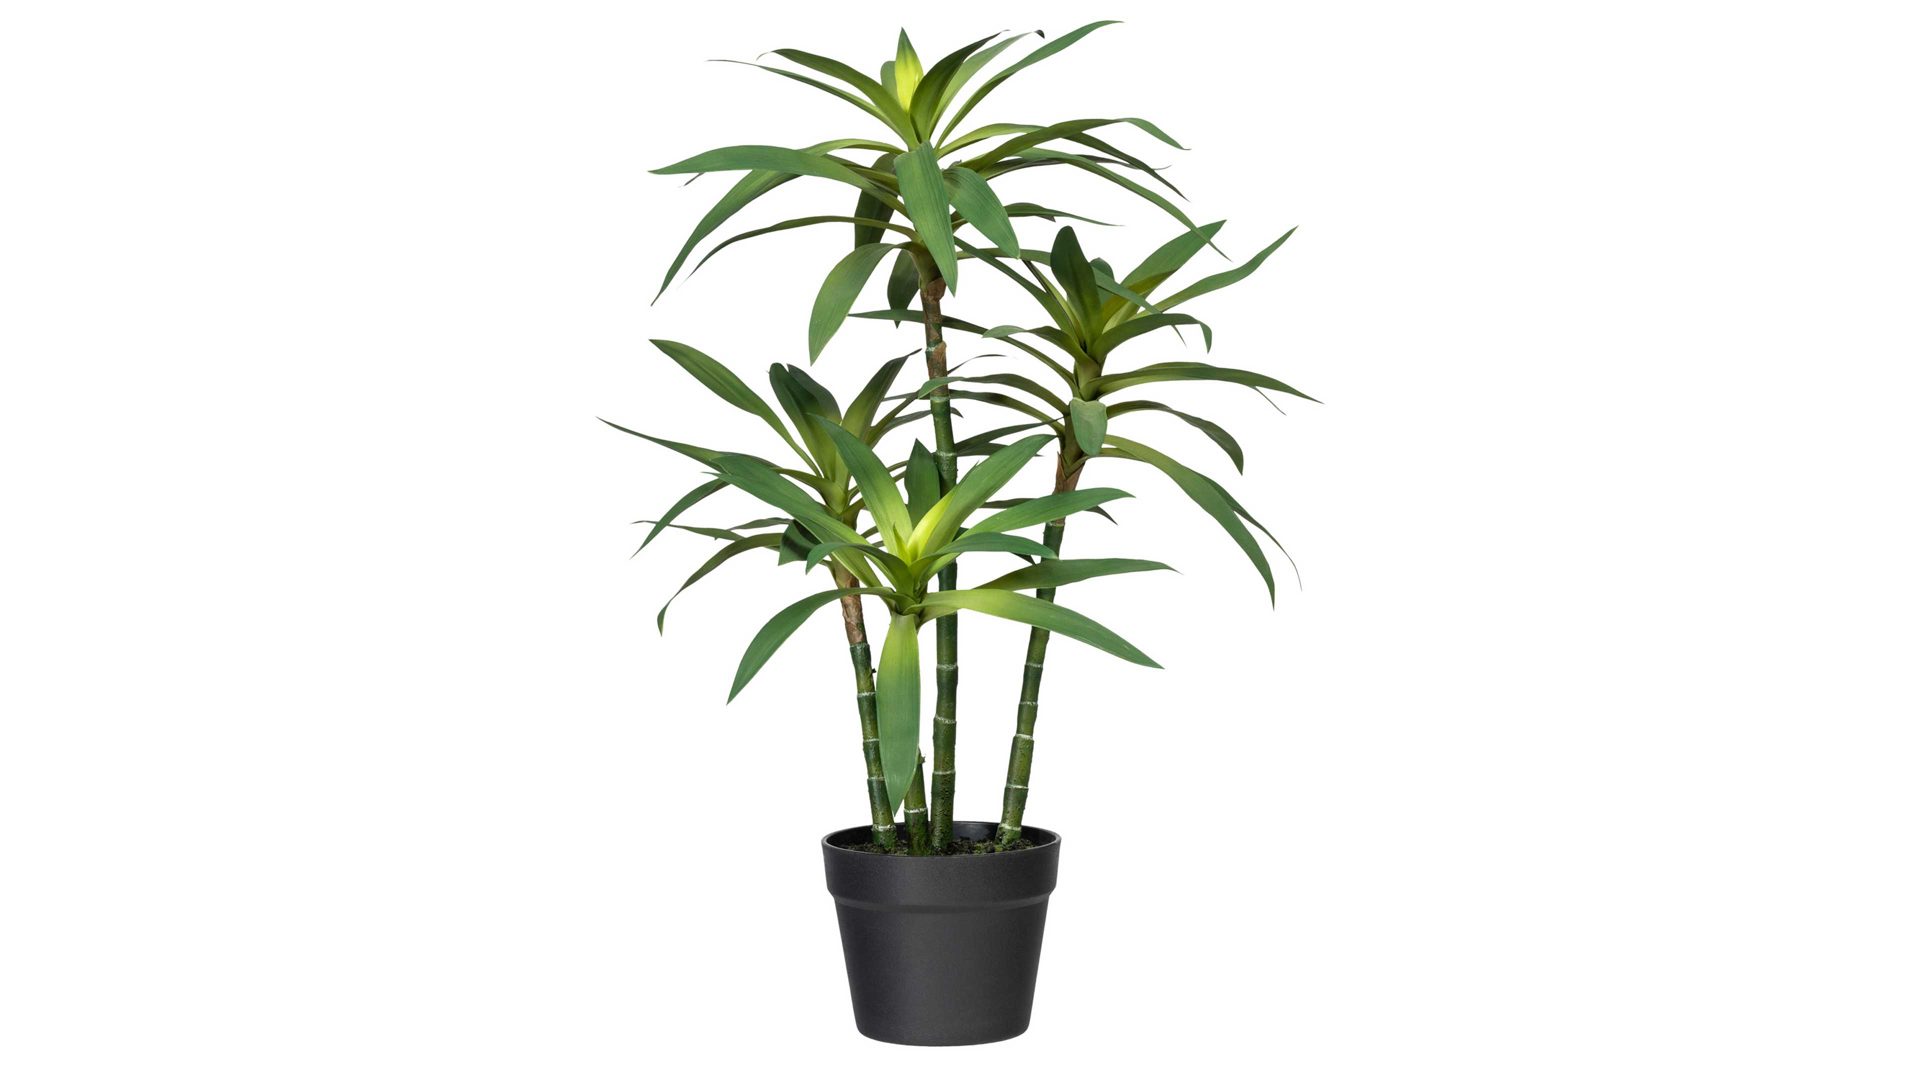 Pflanze Gasper aus Kunststoff in Grün Drachenbaum grüner Kunststoff & schwarzer Topf – Höhe ca. 65 cm